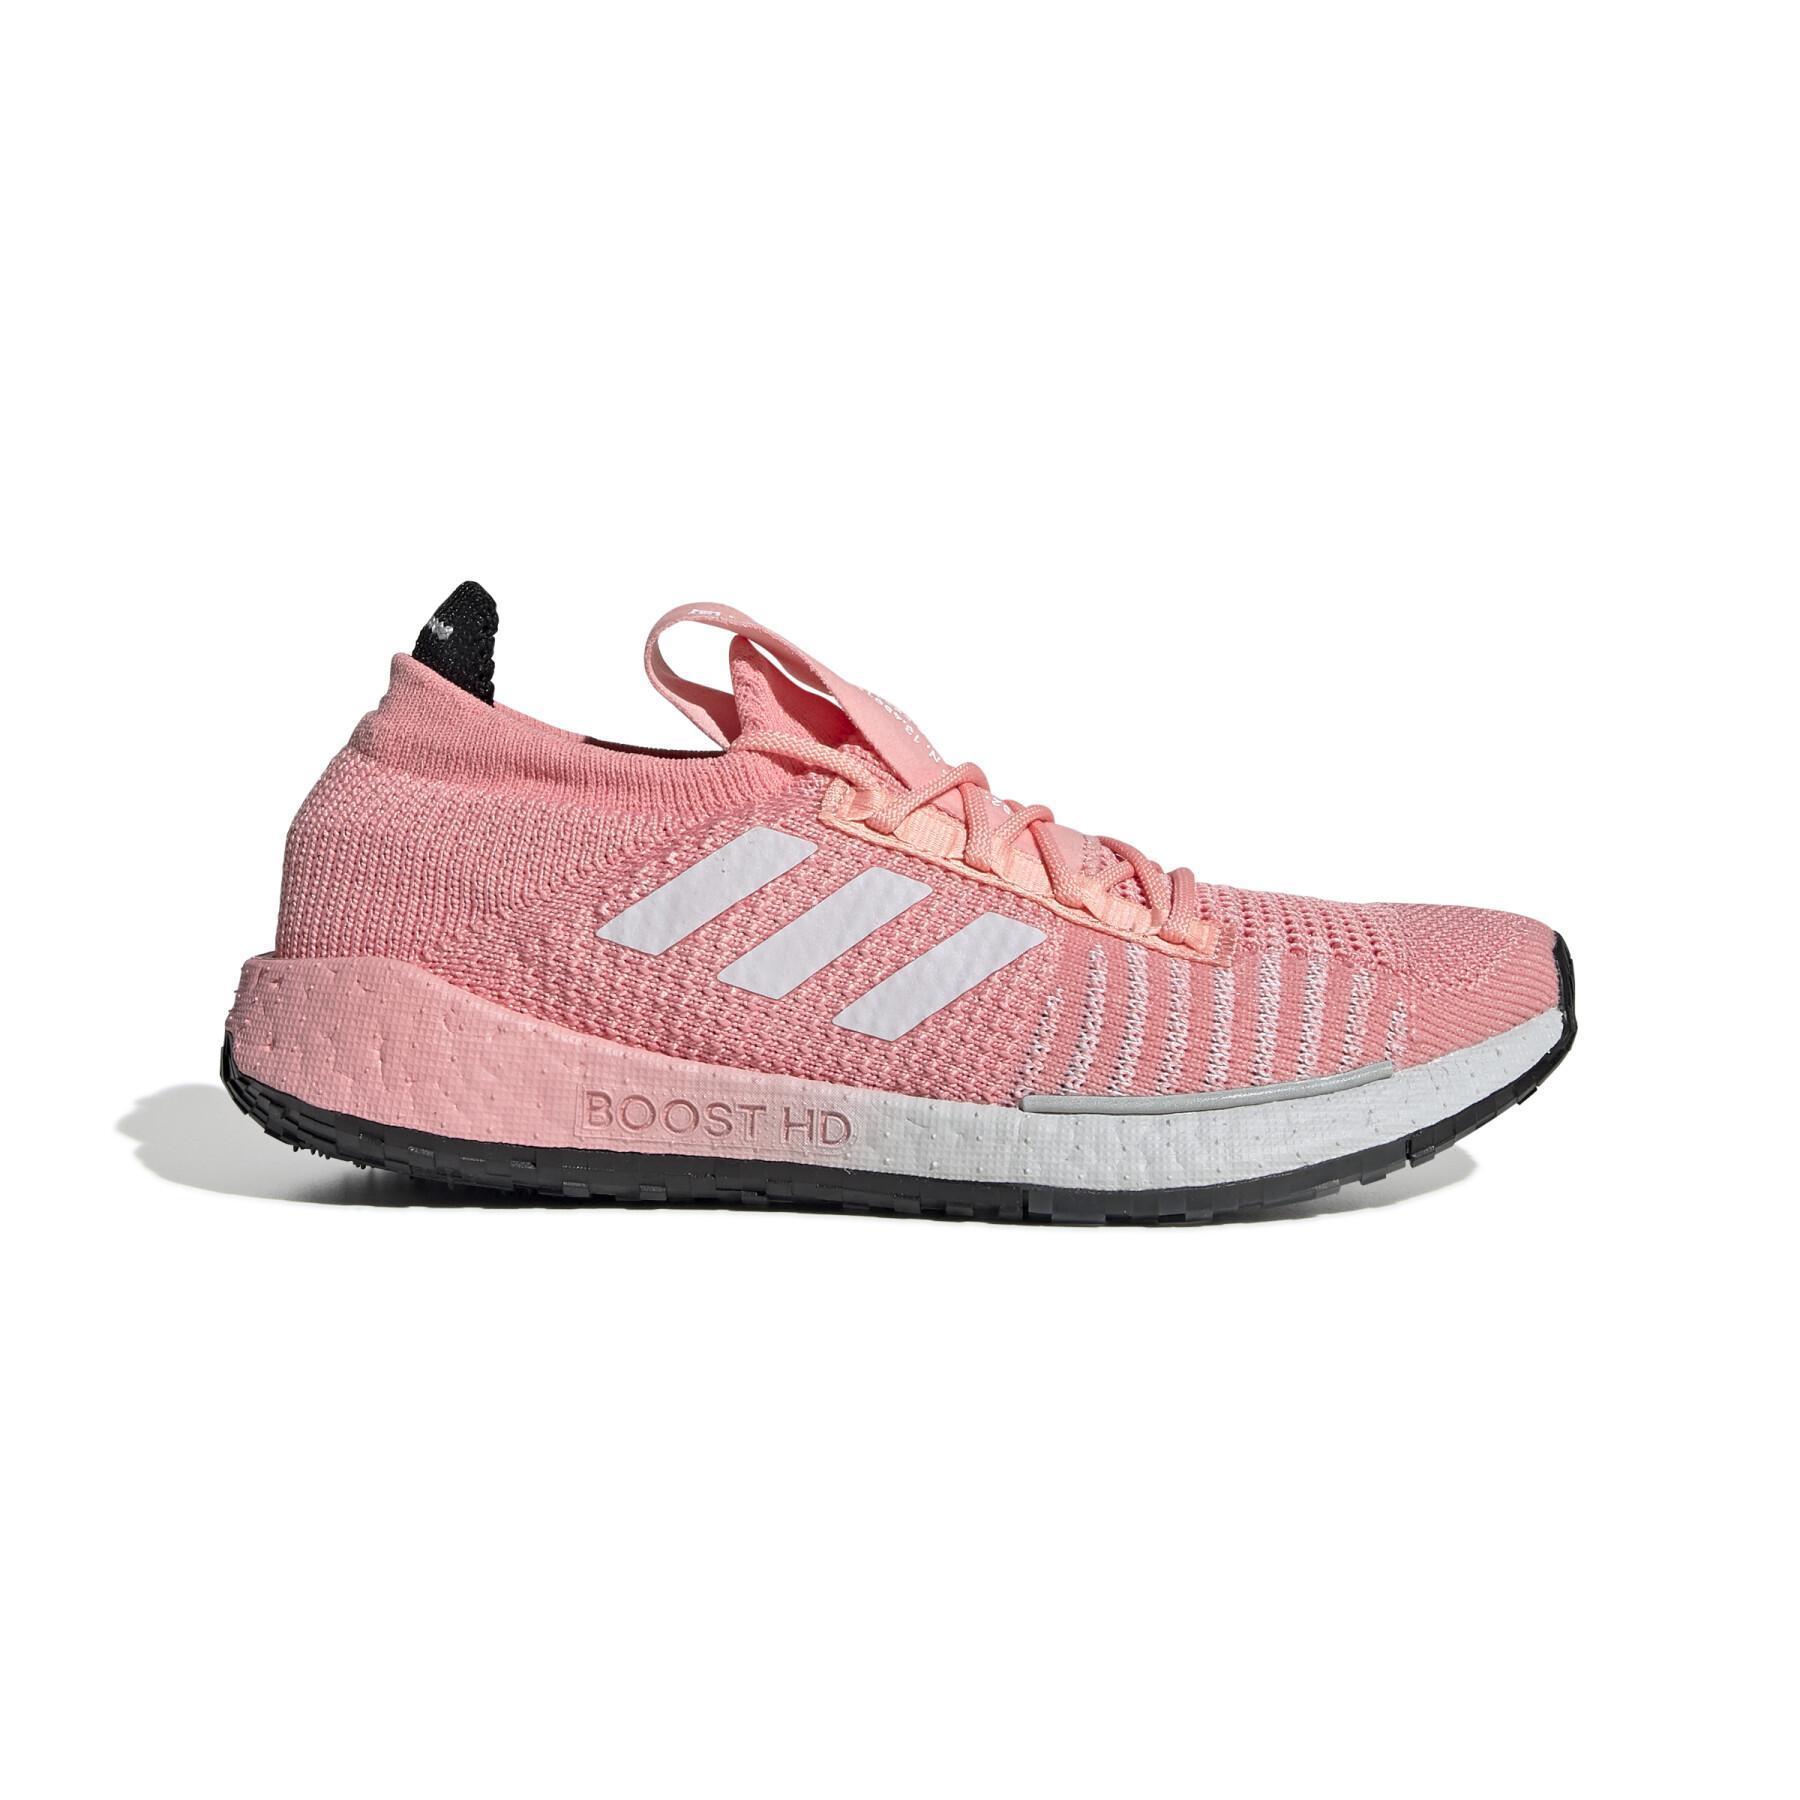 Chaussures de running femme adidas Pulseboost HD